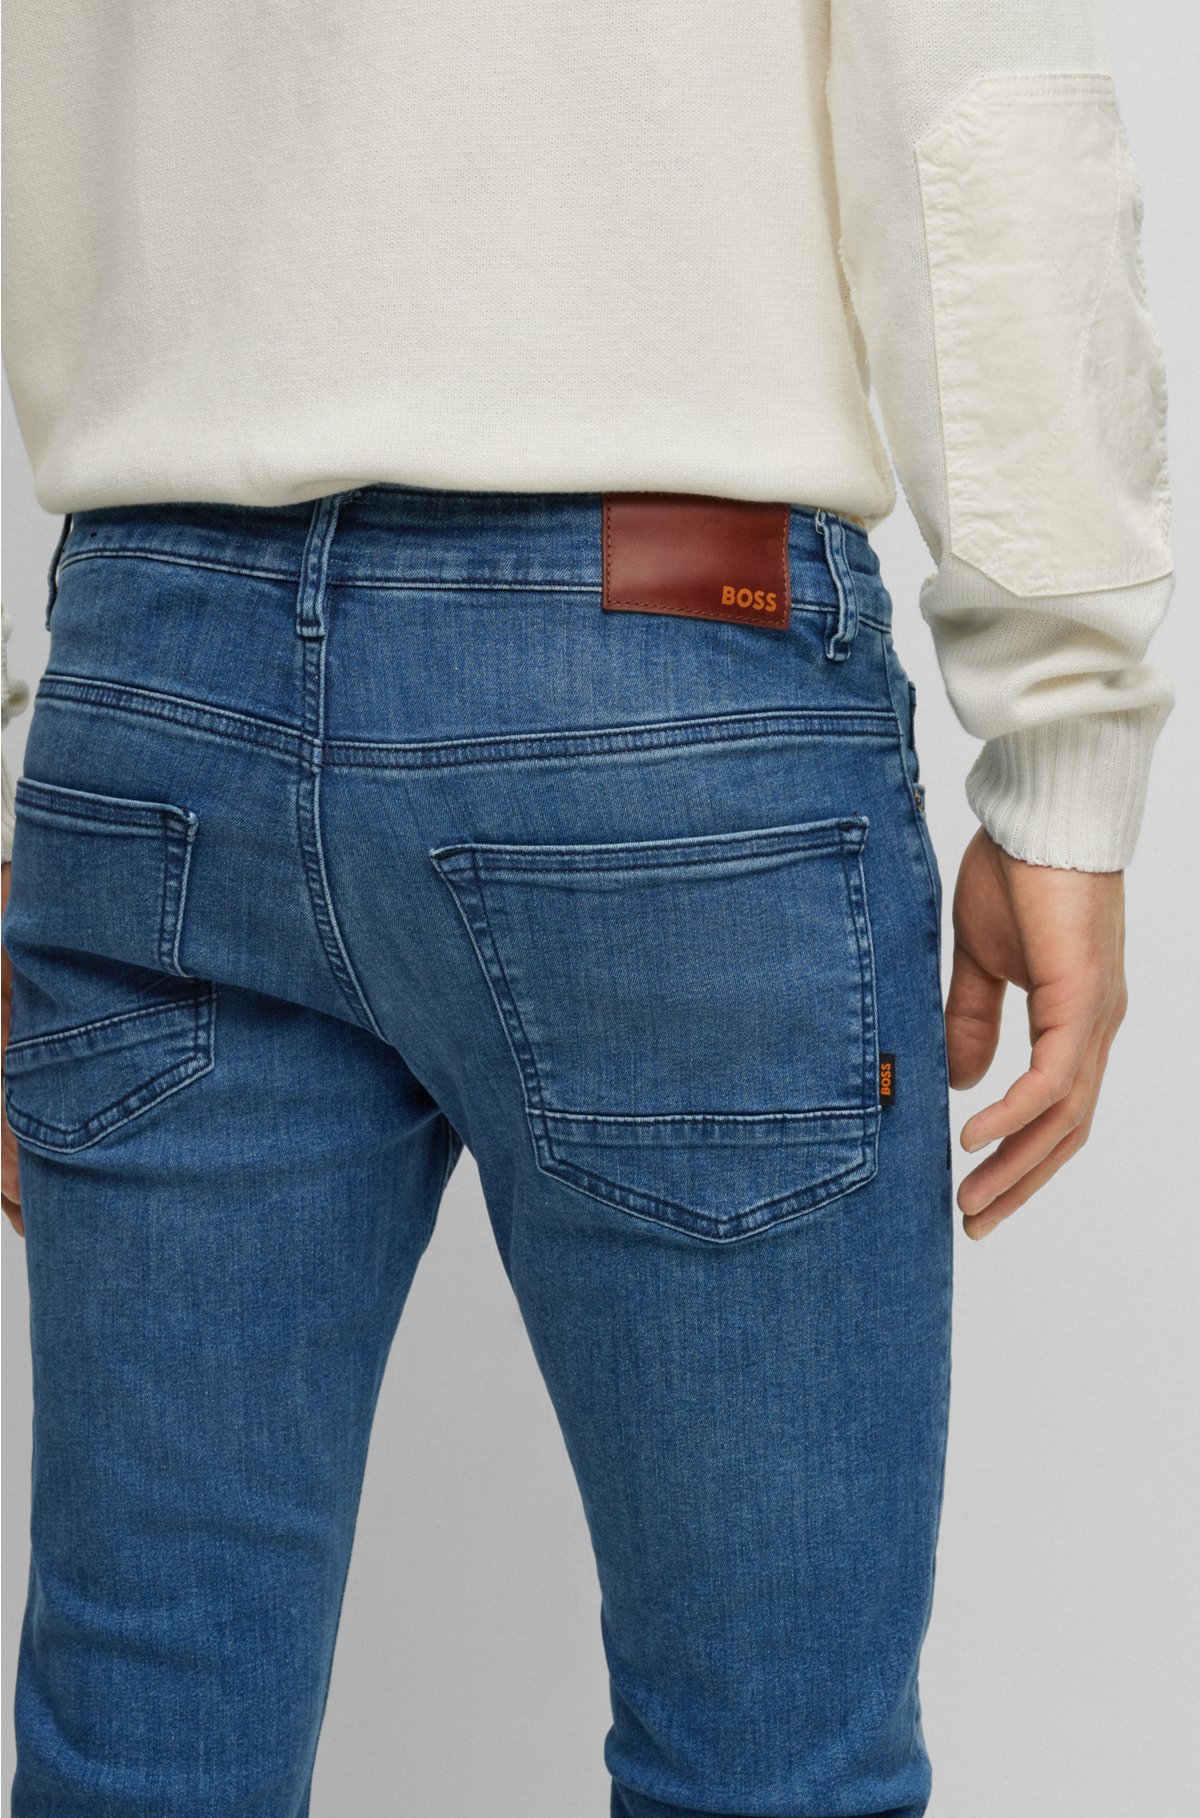 BOSS - Slim-fit in blue super-stretch denim jeans